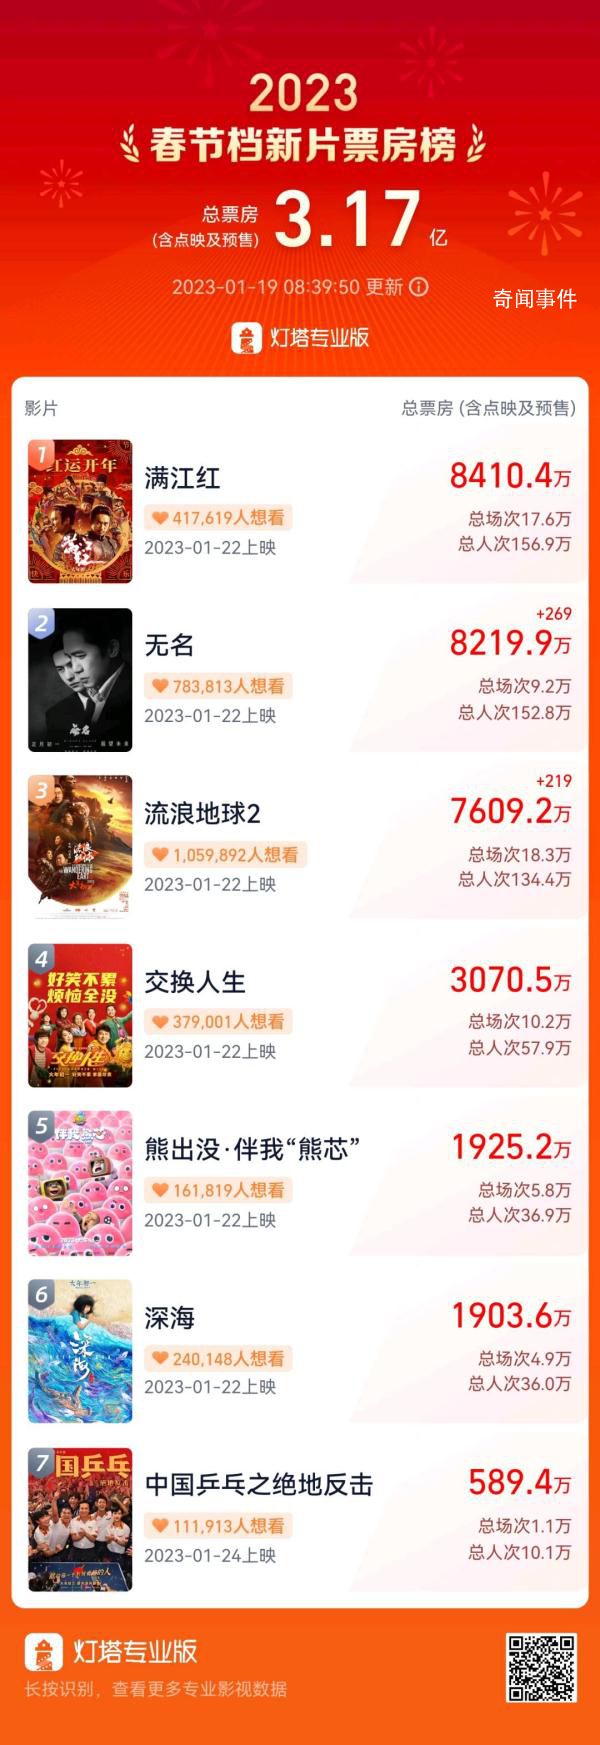 春节档新片预售总票房破3亿 已达3.17亿